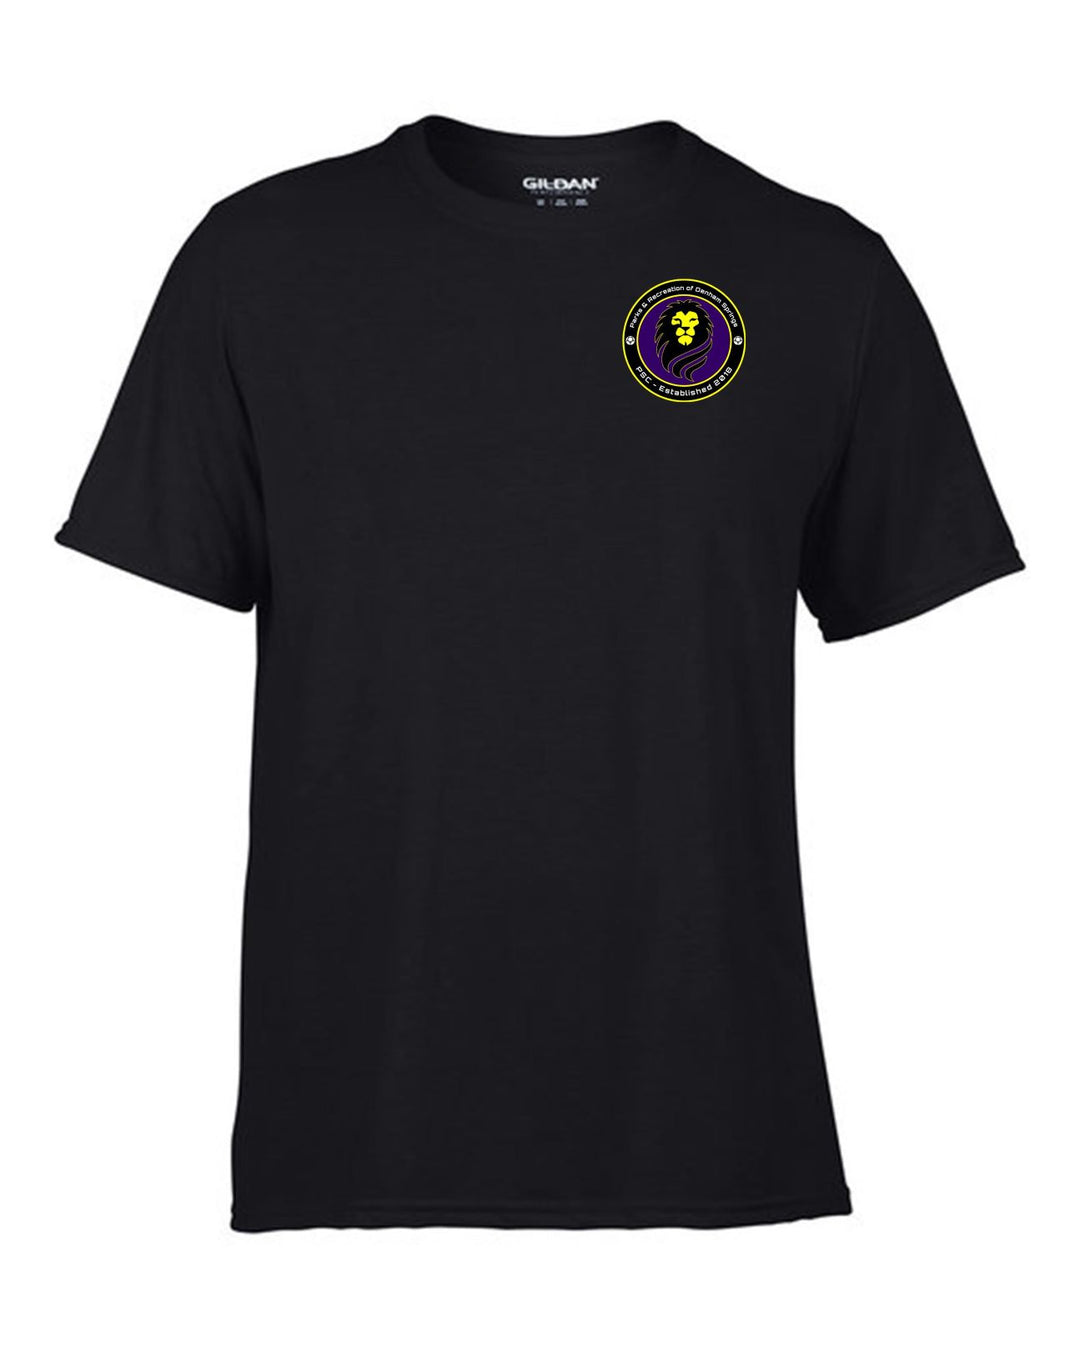 PARDS Short-Sleeve T-Shirt PARDS 2325 Black Mens Medium - Third Coast Soccer